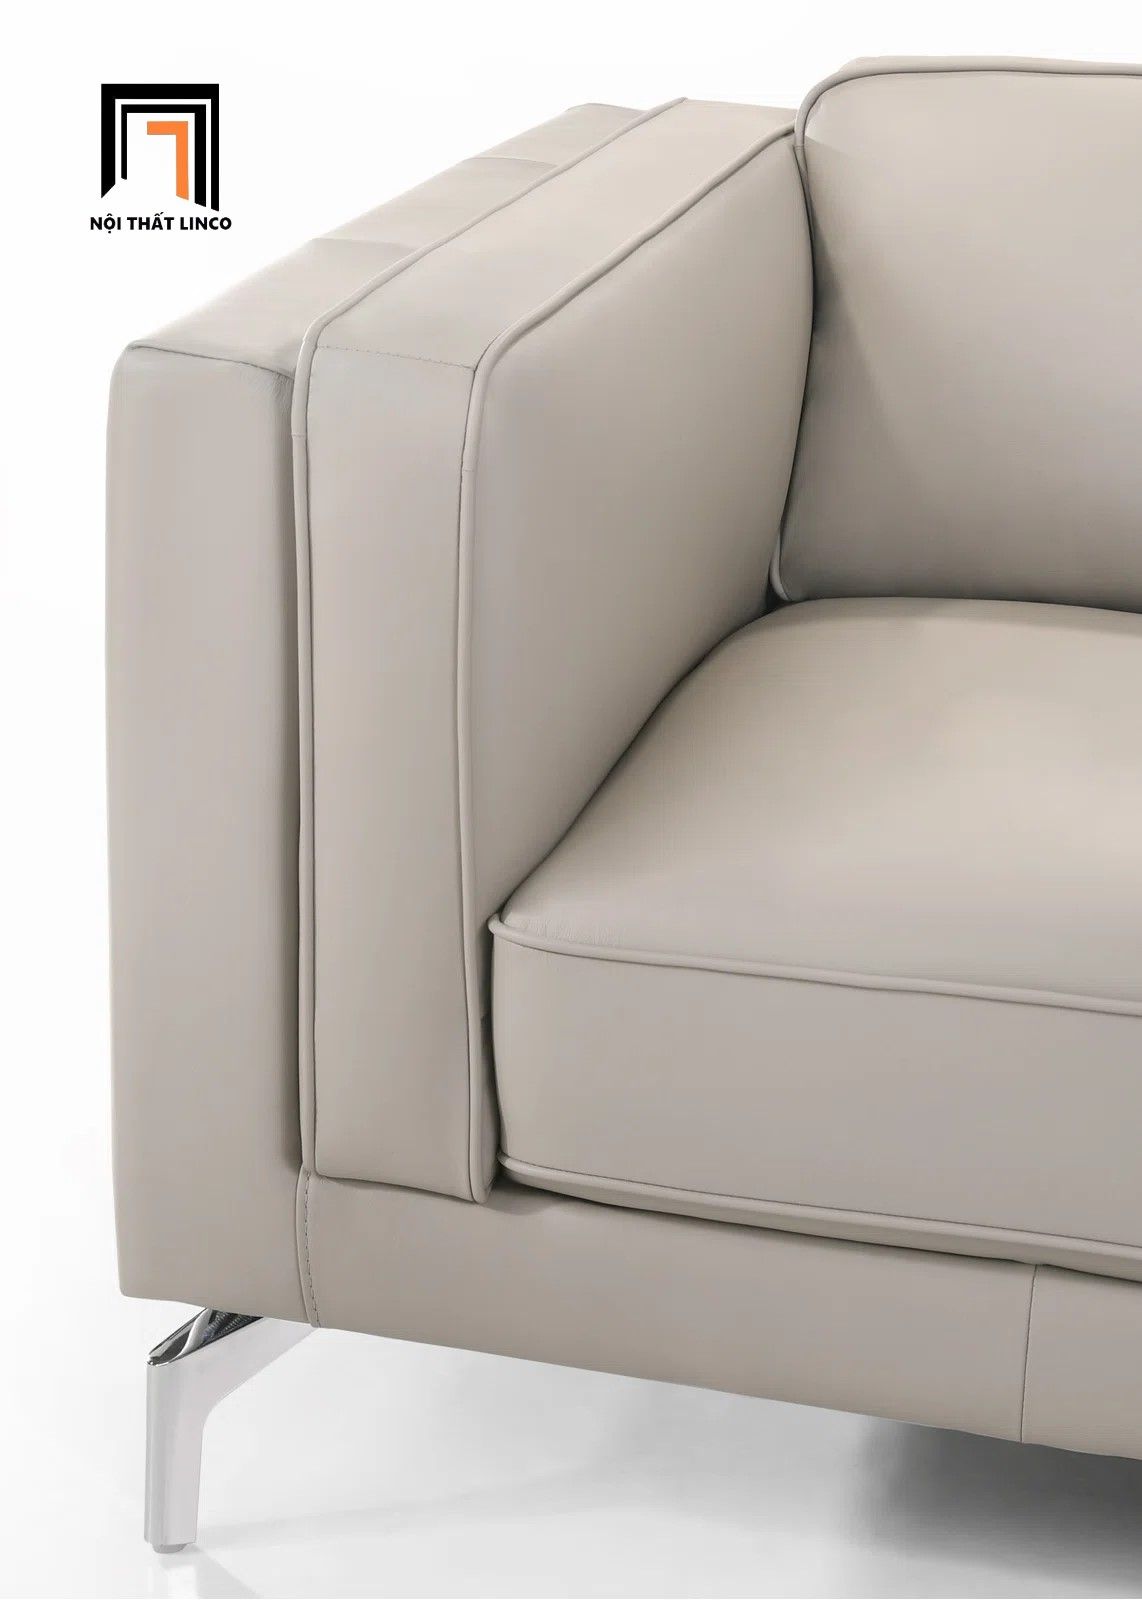  Bộ ghế sofa góc chữ L sang trọng GT103 Ellis 2m4 x 1m6 da giả 